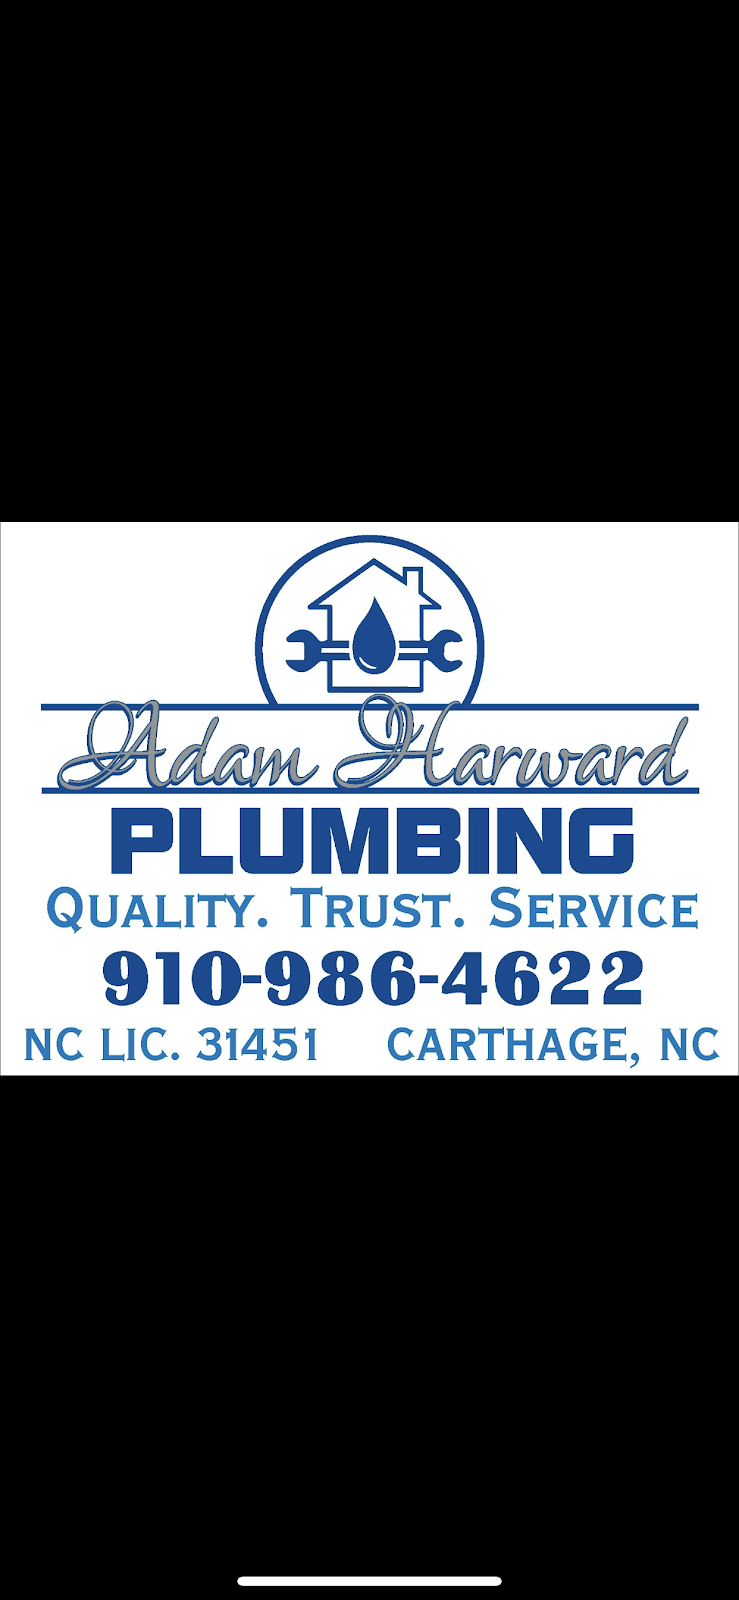 Adam Harward Plumbing, LLC | 192 Hulsey Rd, Carthage, NC 28327, USA | Phone: (910) 947-2962